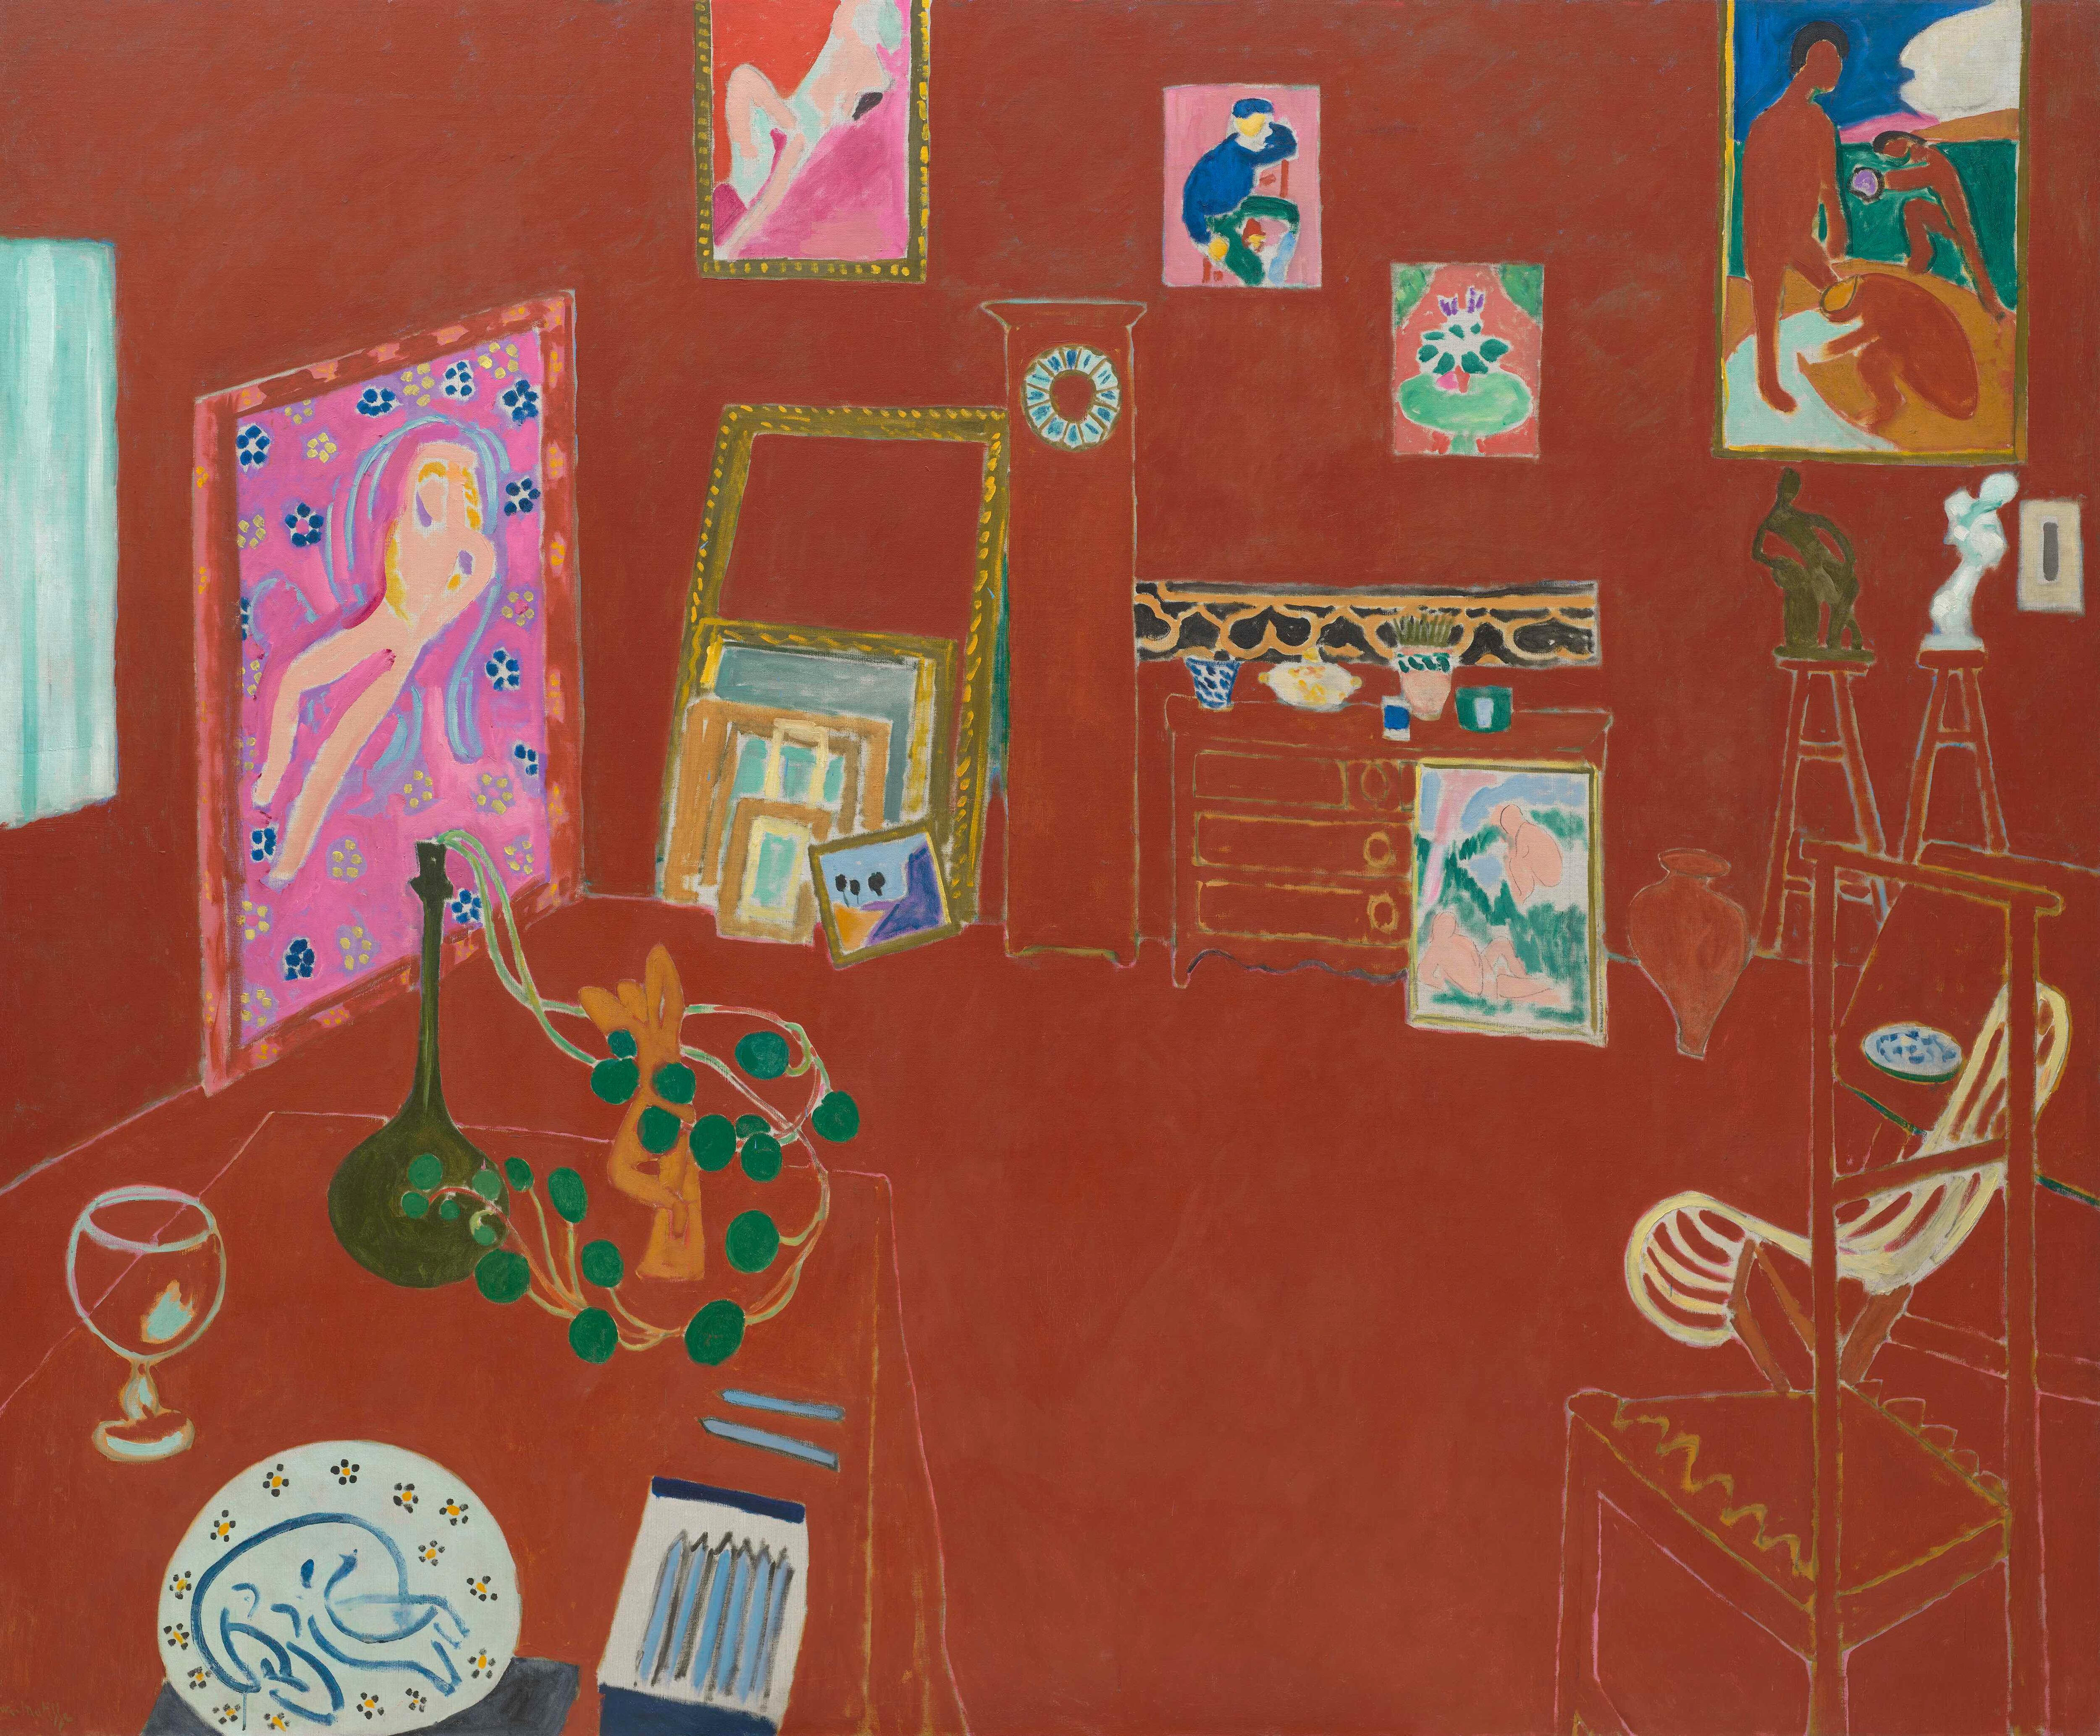 'El taller rojo' (1911), de Henri Matisse, conservado en el MoMA de Nueva York y expuesto ahora en París.